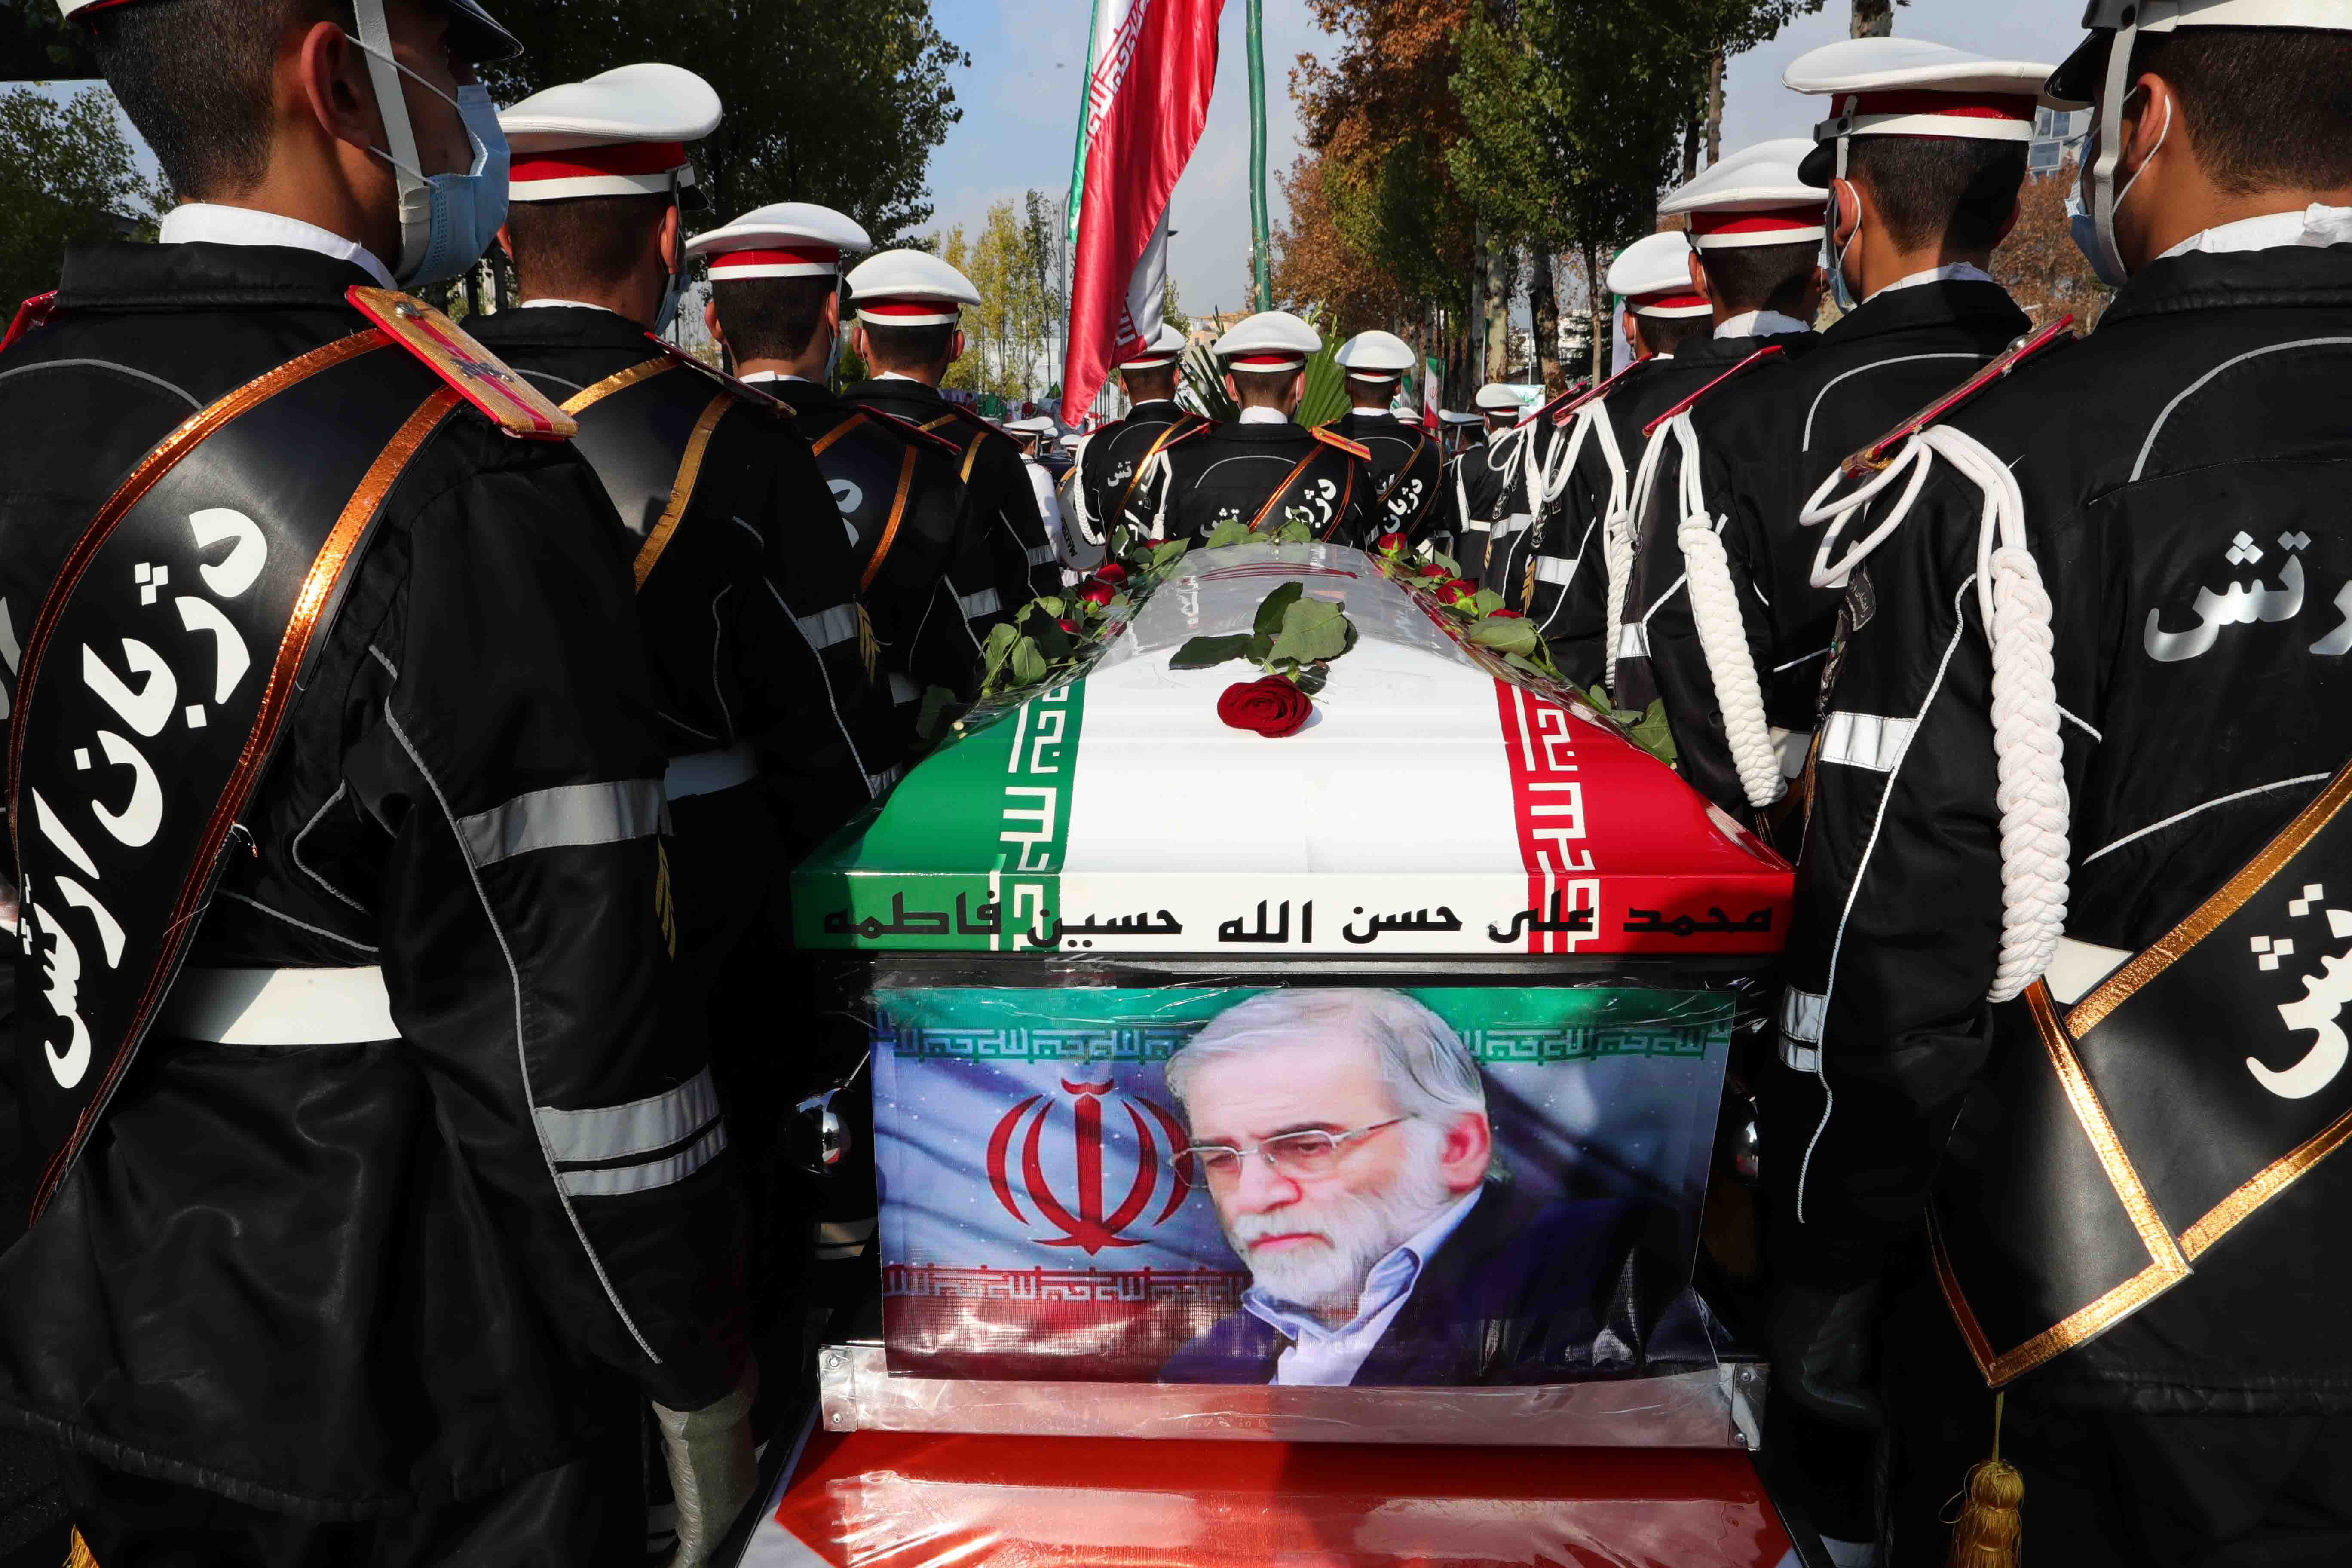 Kiderült, hogyan likvidálta a Moszad az iráni atomtudóst